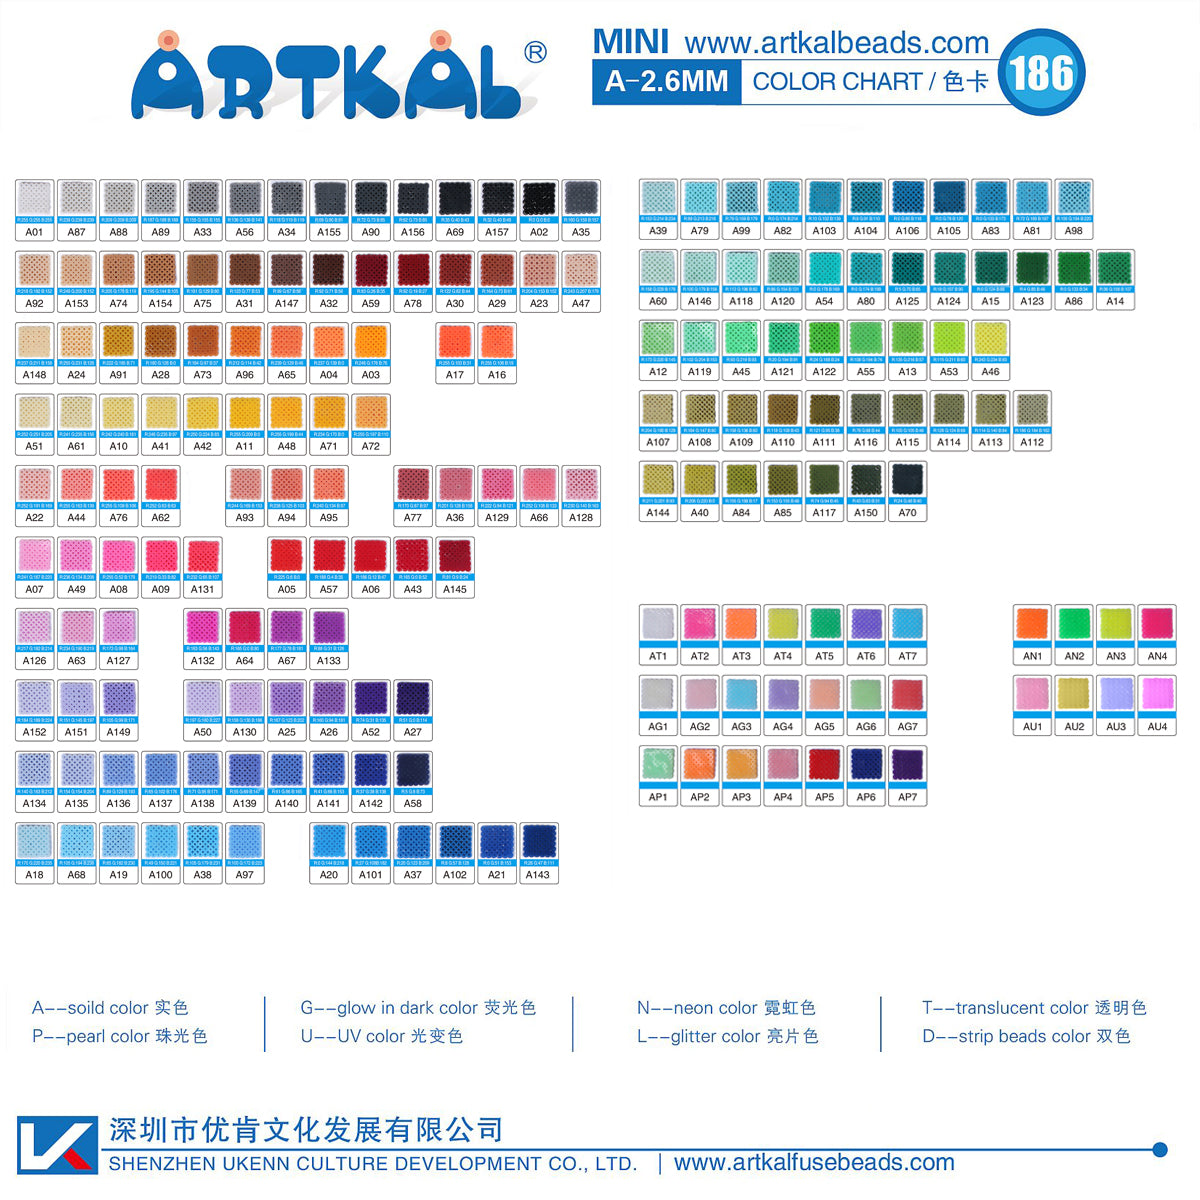 (AN1-AN4) A-2.6mm 7500P single pack mini artkal beads